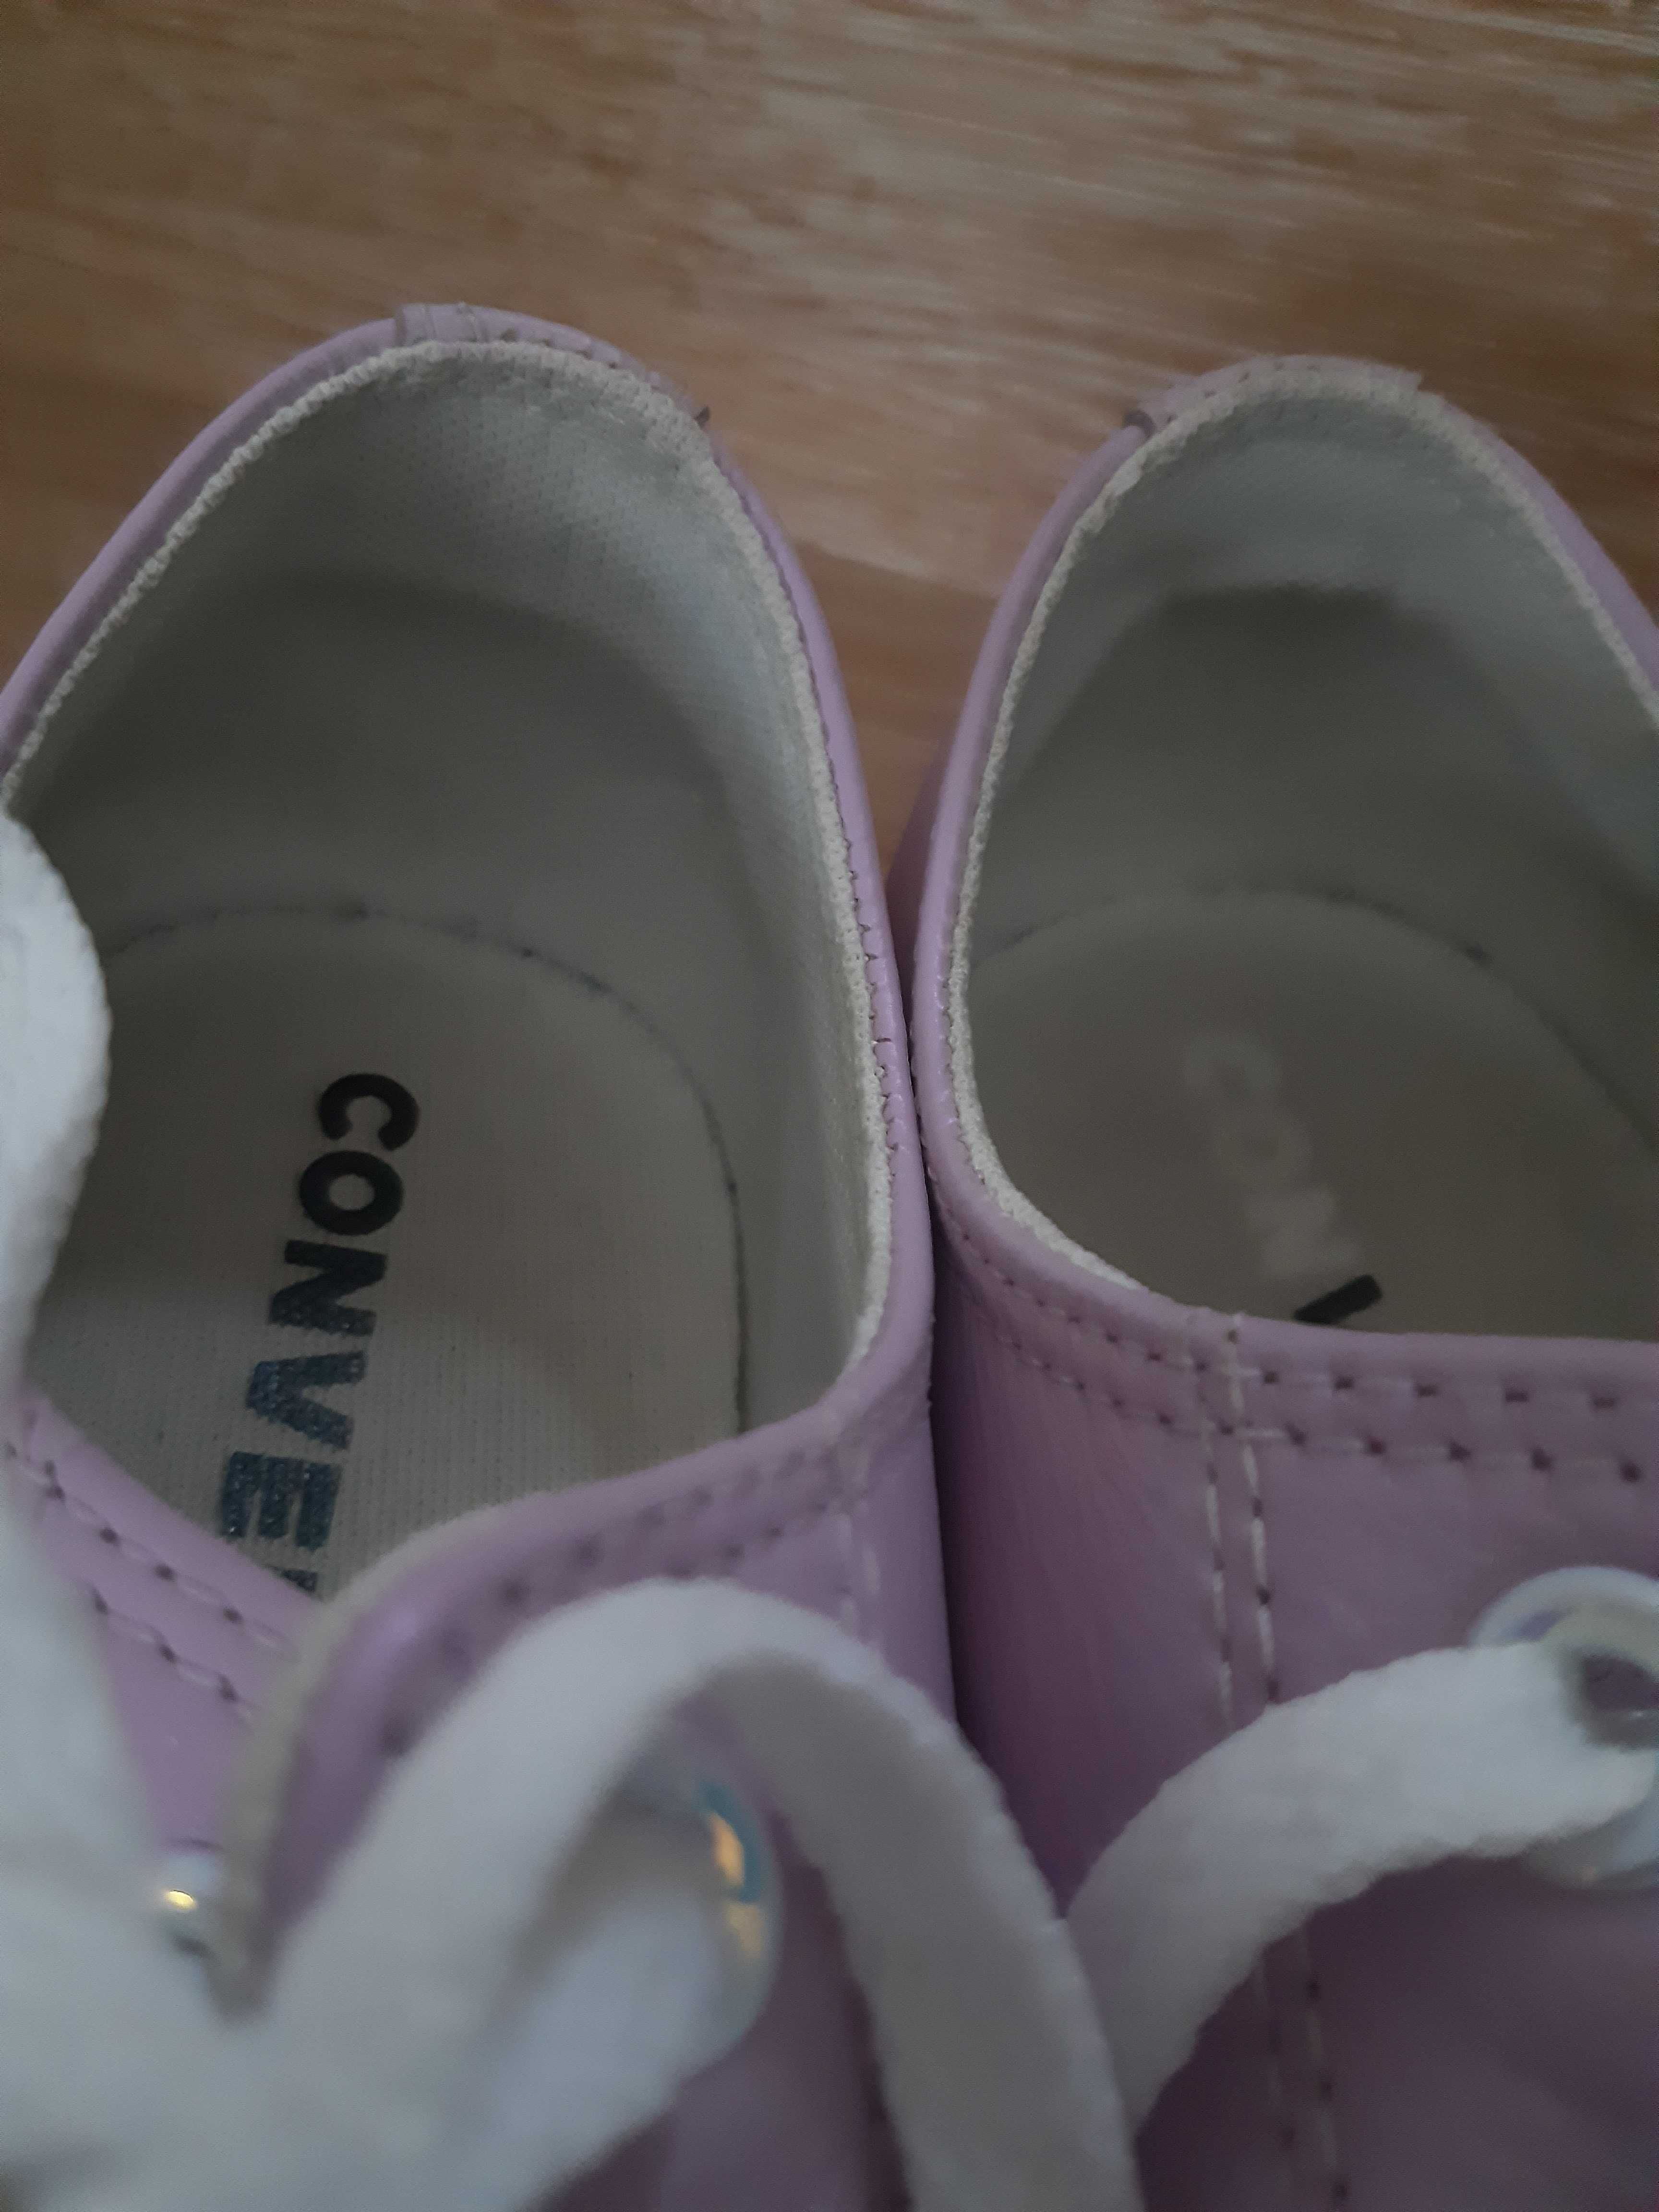 trampki Converse skórzane, kolor jasny fioletowy z połyskiem r. 41,5